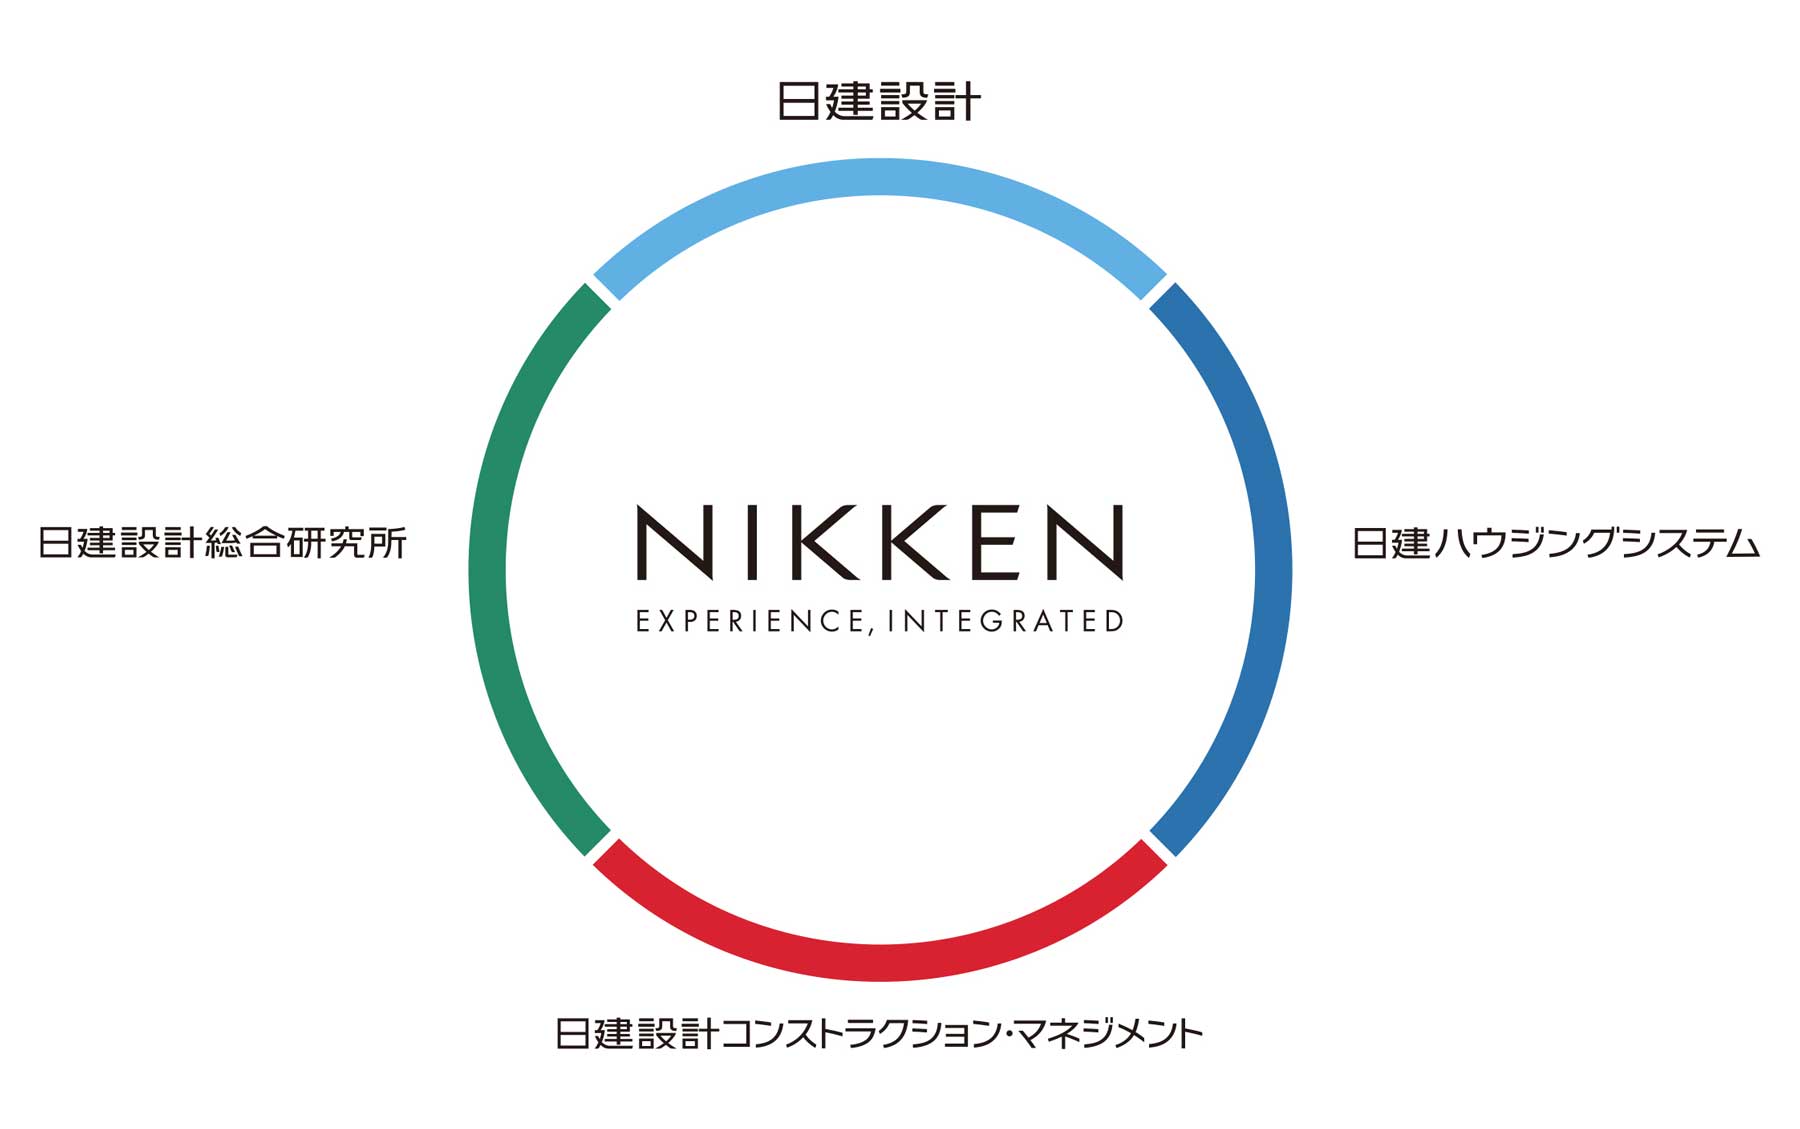 NIKKEN（日建設計、日建ハウジングシステム、日建設計コンストラクション・マネジメント、日建設計総合研究所）